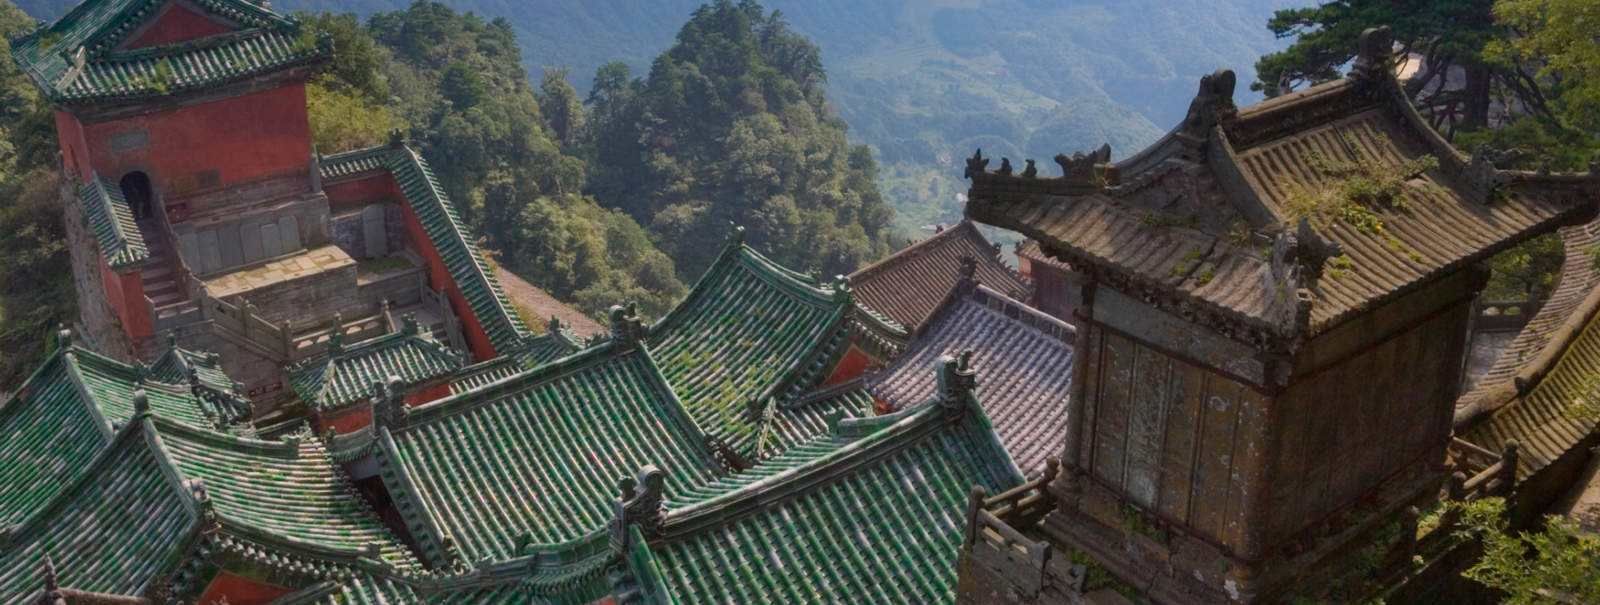 le-temple-taoiste-zixiao-dans-les-monts-wudang-province-de-hubei.jpg